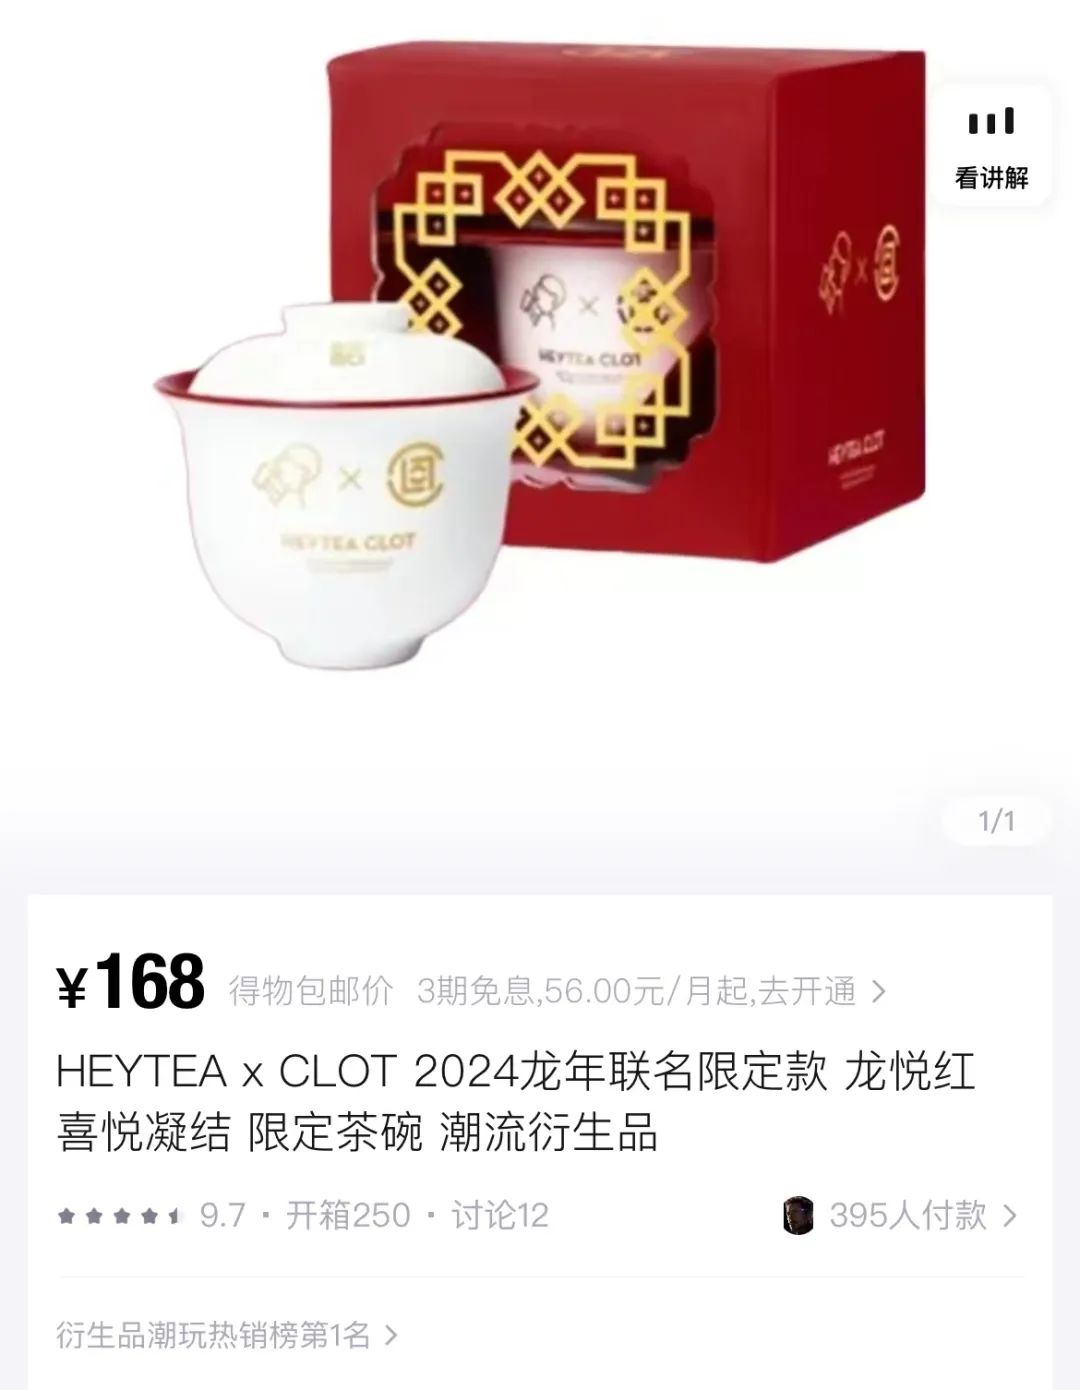 「陈冠希Clot x 喜茶」茶碗被炒到170块钱一个了？？？